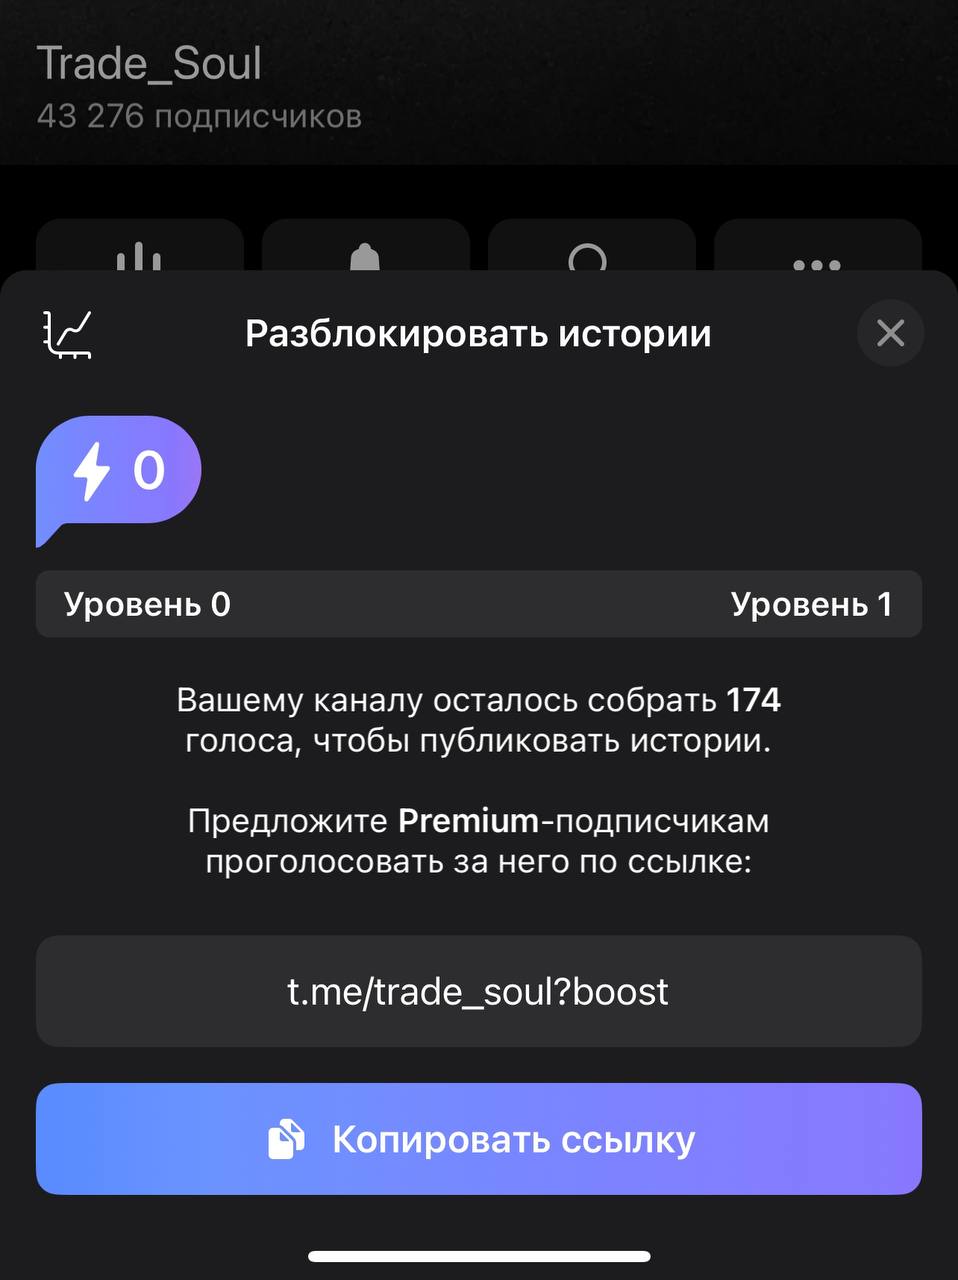 Обновить телеграмм до последней версии бесплатно на русском языке на телефон андроид фото 17